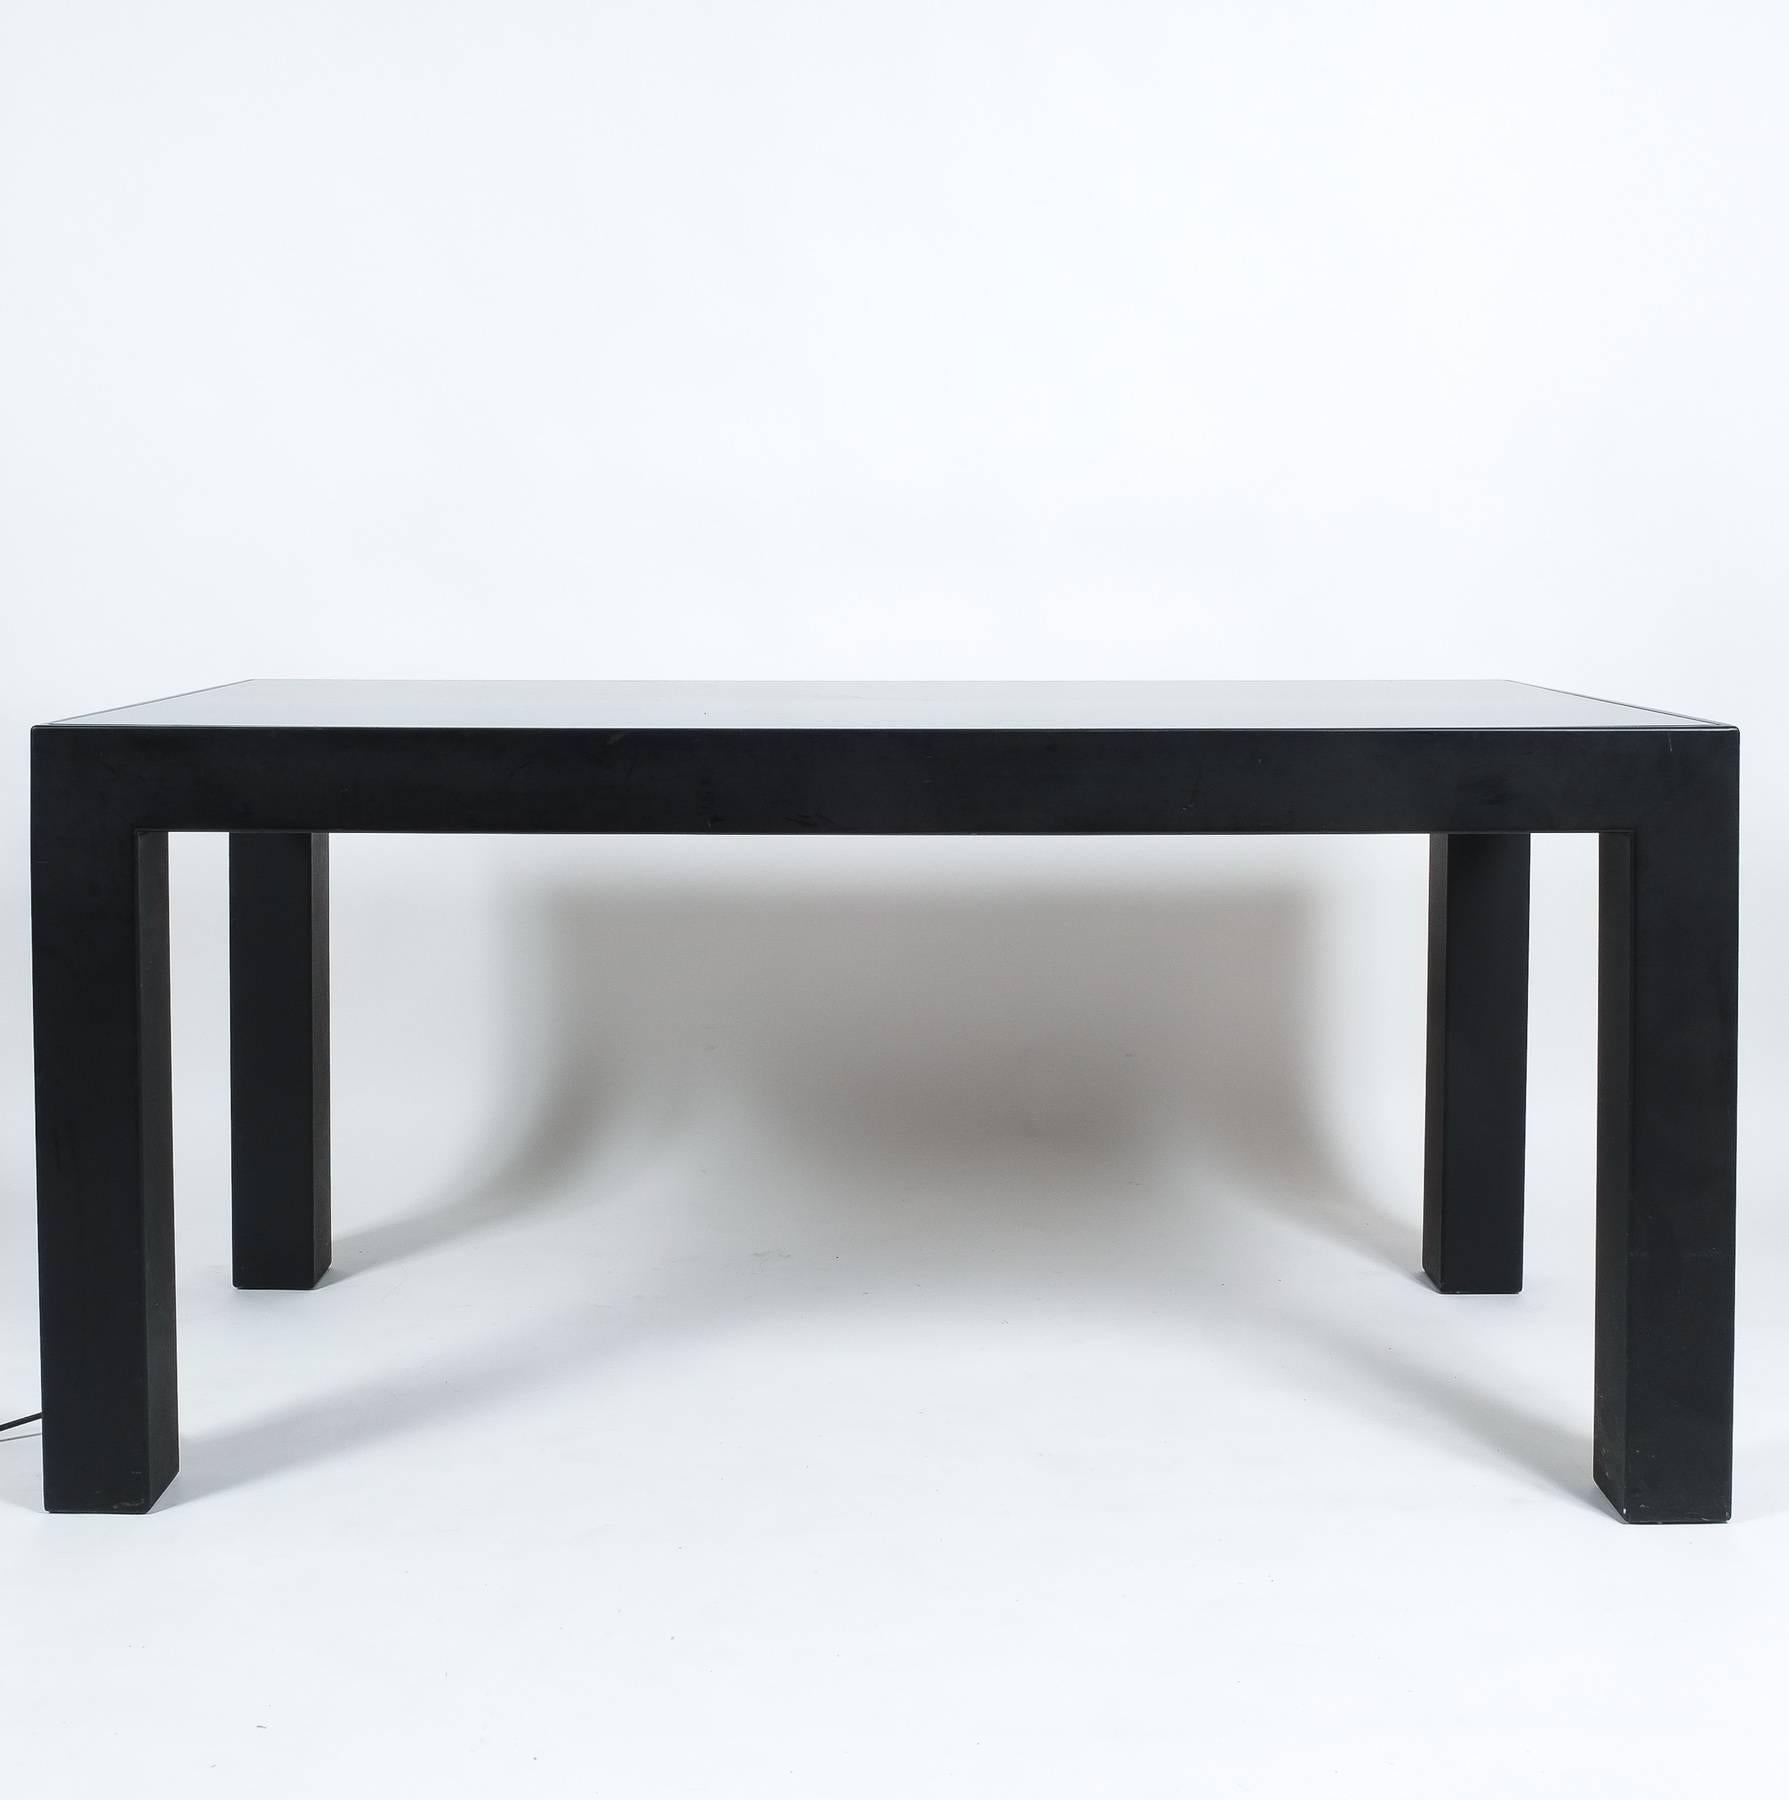 Très rare table de salle à manger (Wicked 64) de Johanna Grawunder pour Post-Design Milan, 
2001. 

Les dimensions sont de 31,1